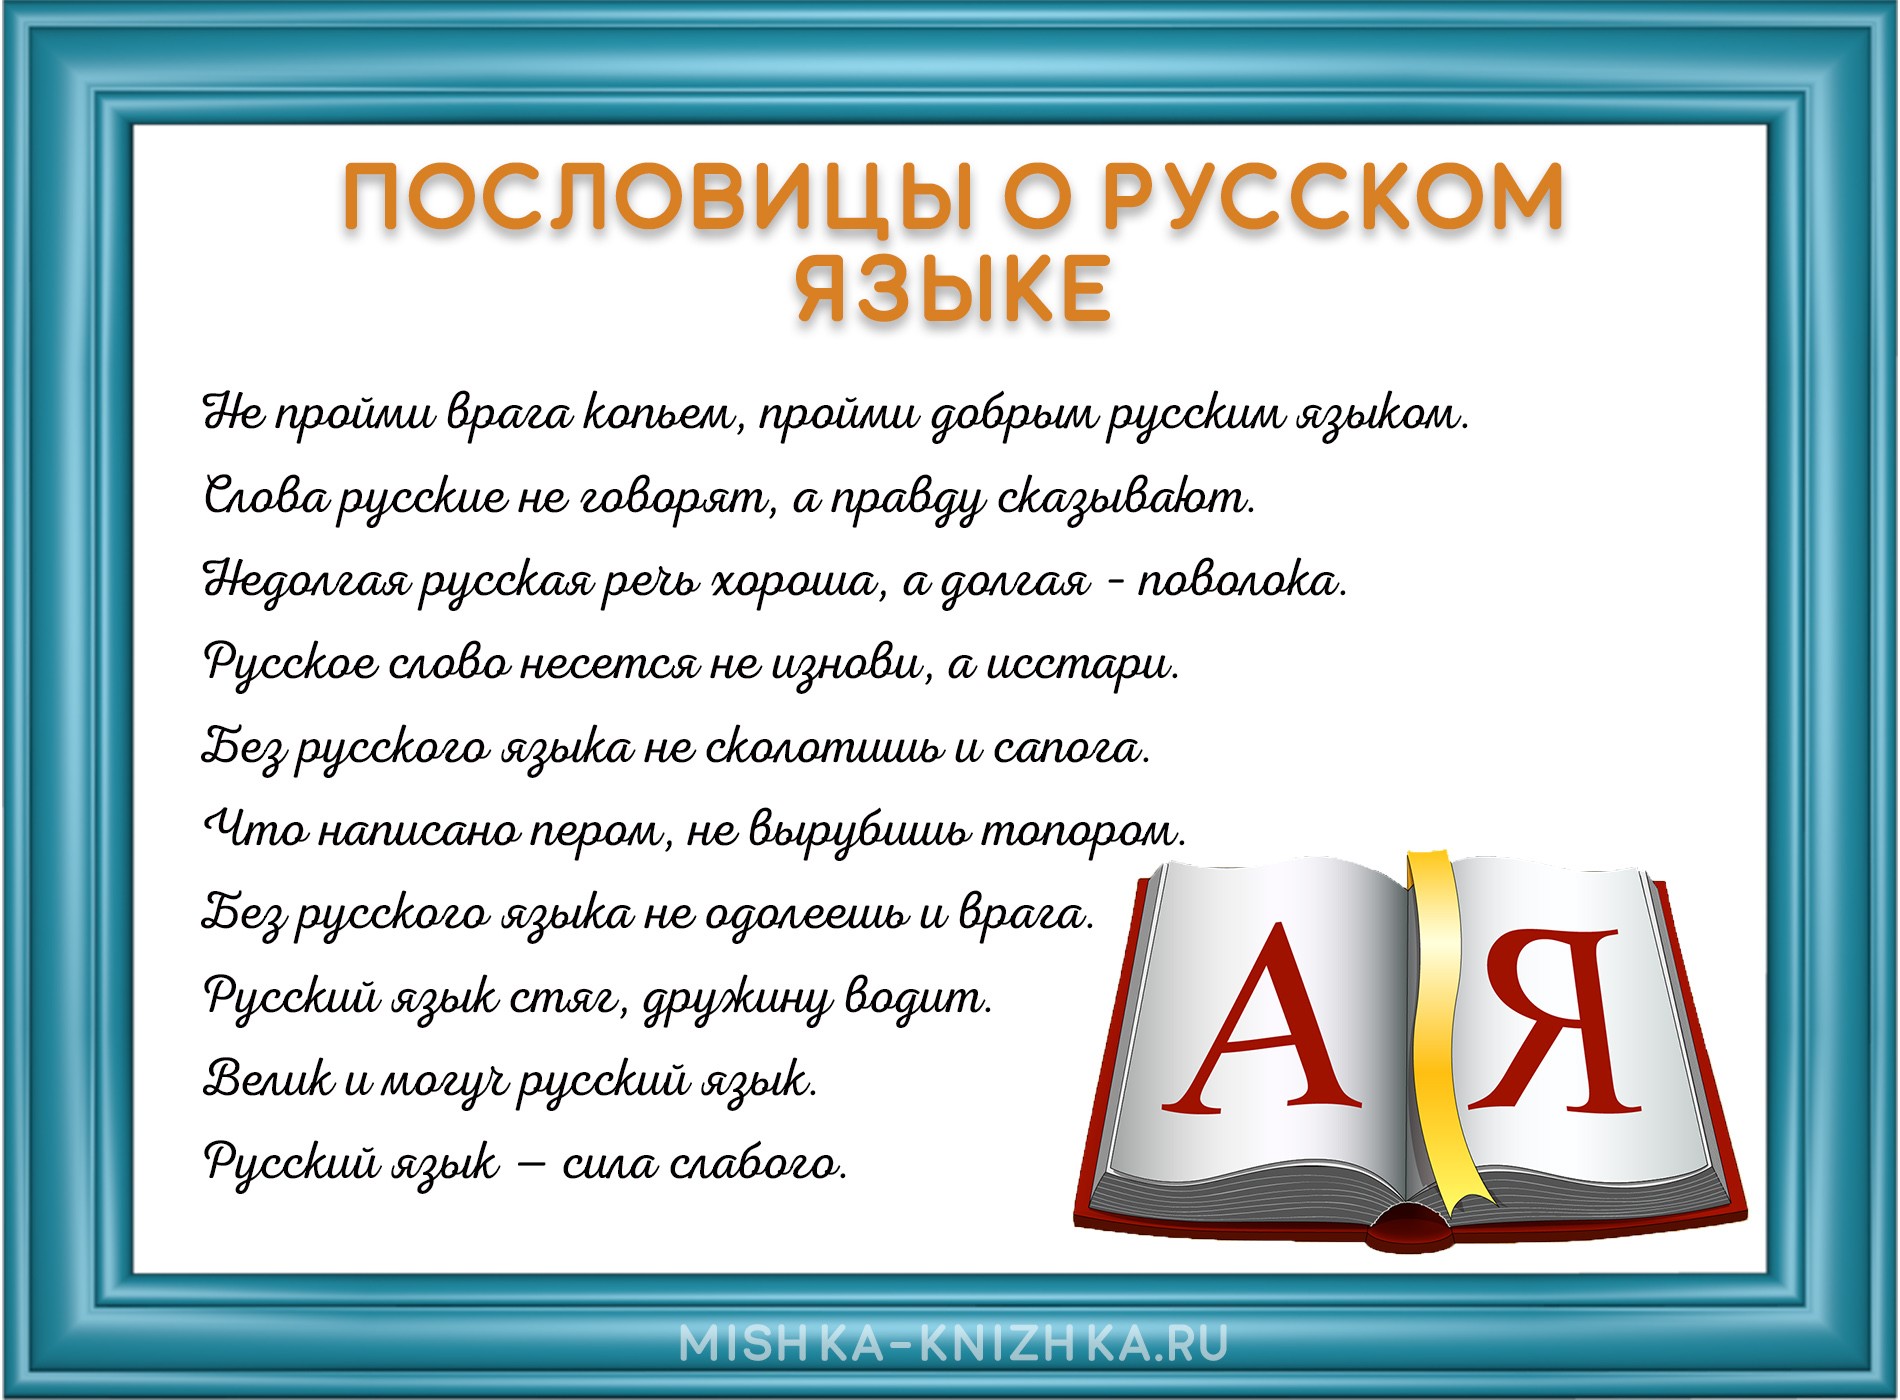 пословицы и поговорки о русском языке картинка